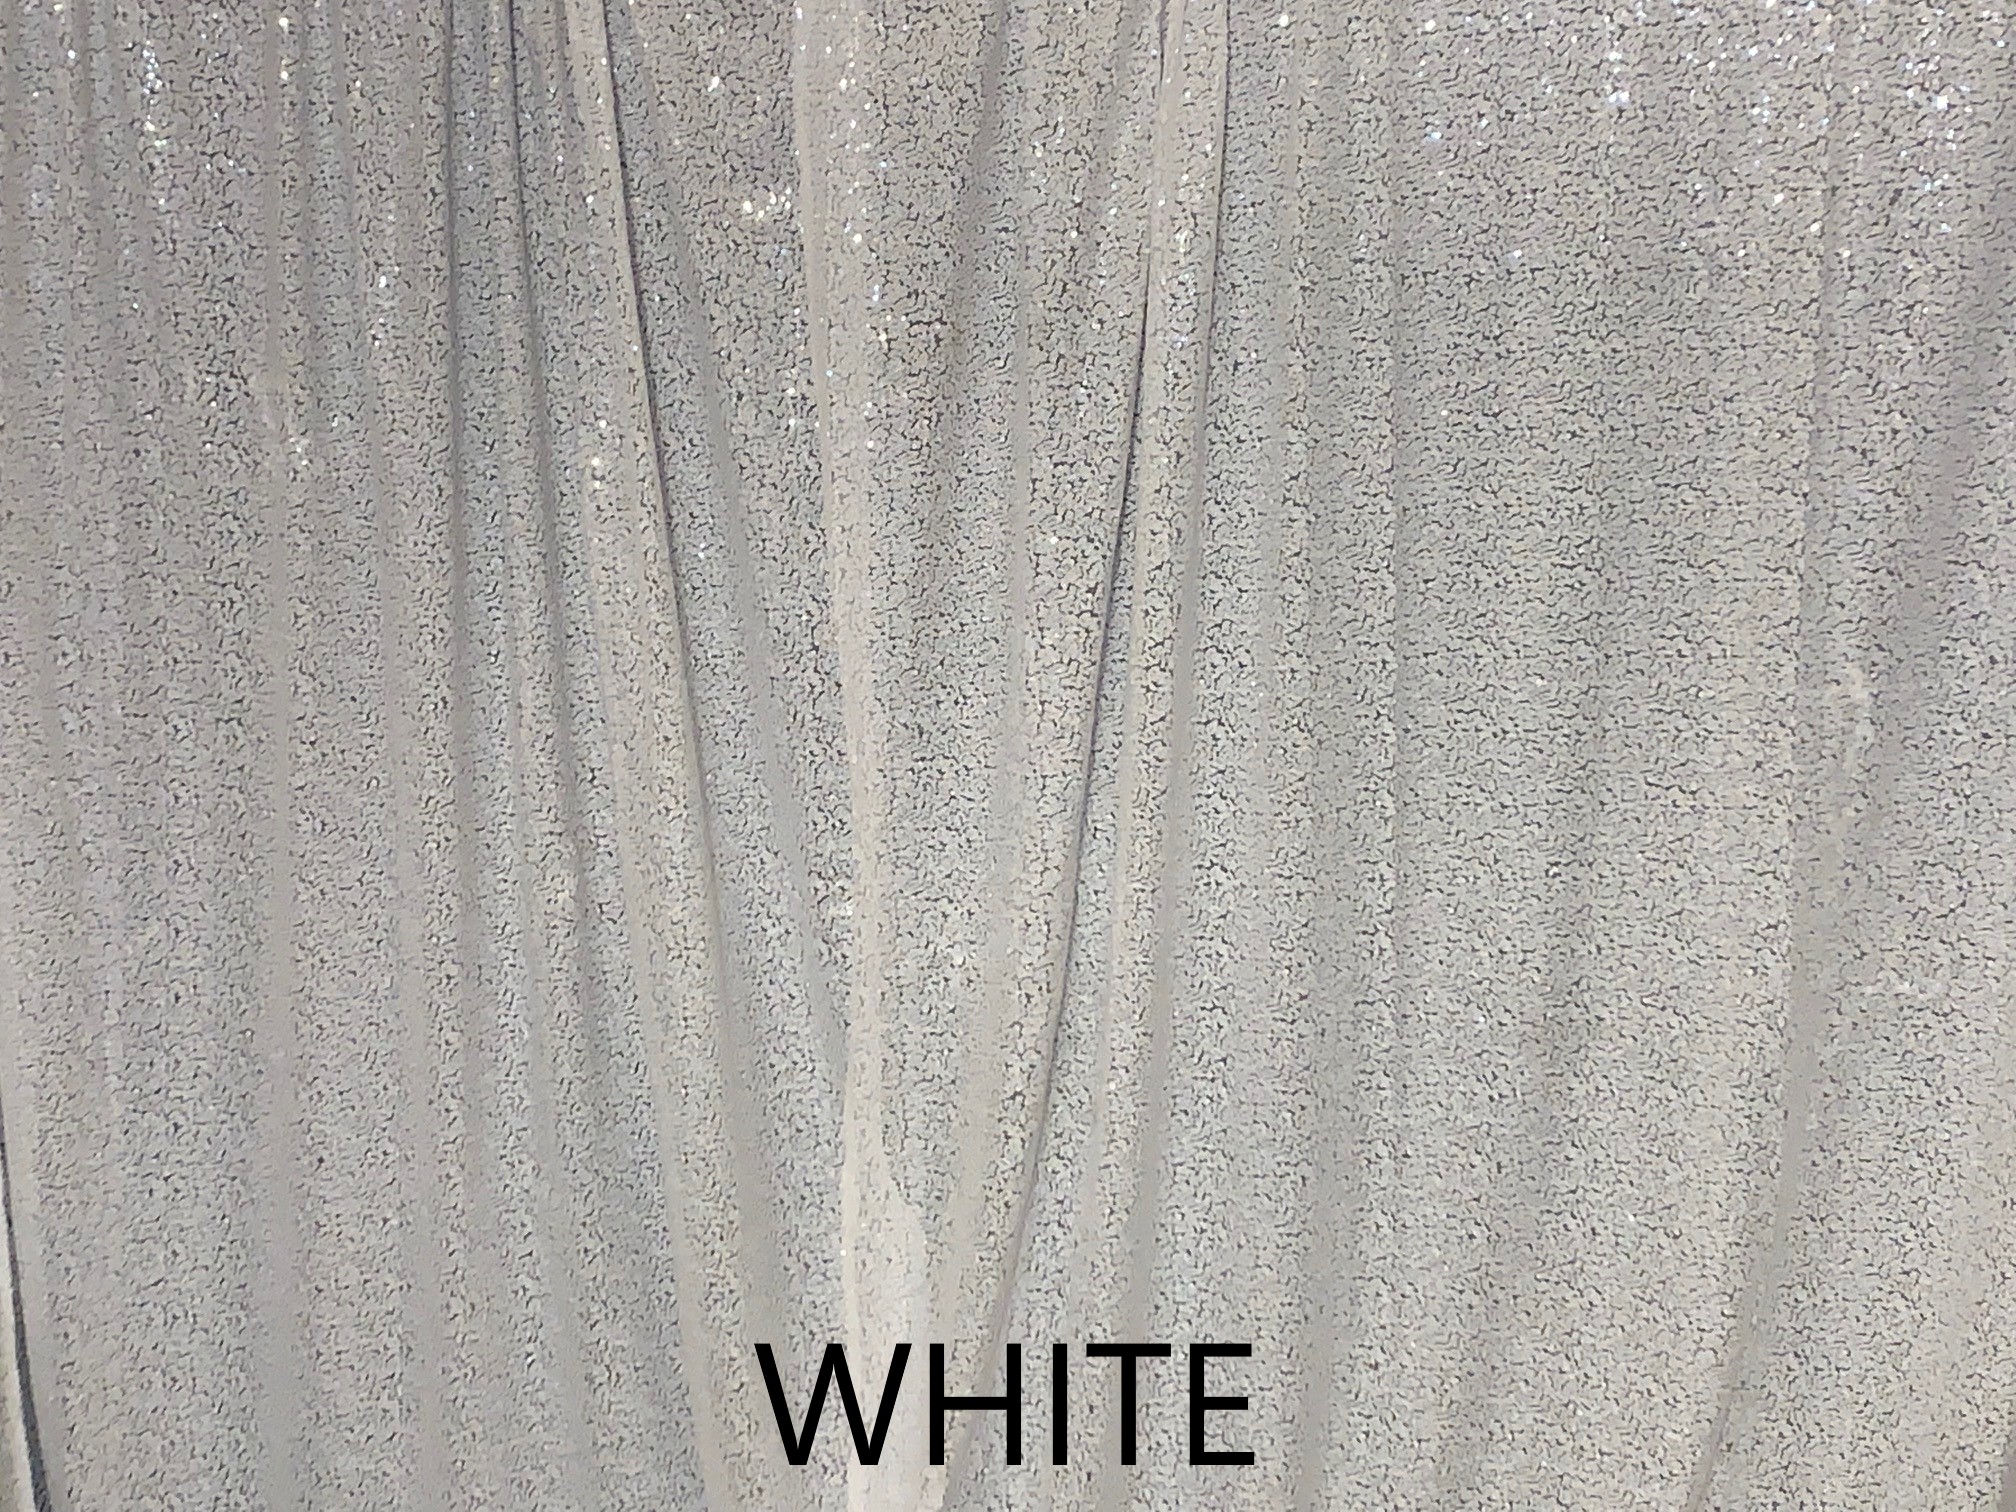 White.jpg